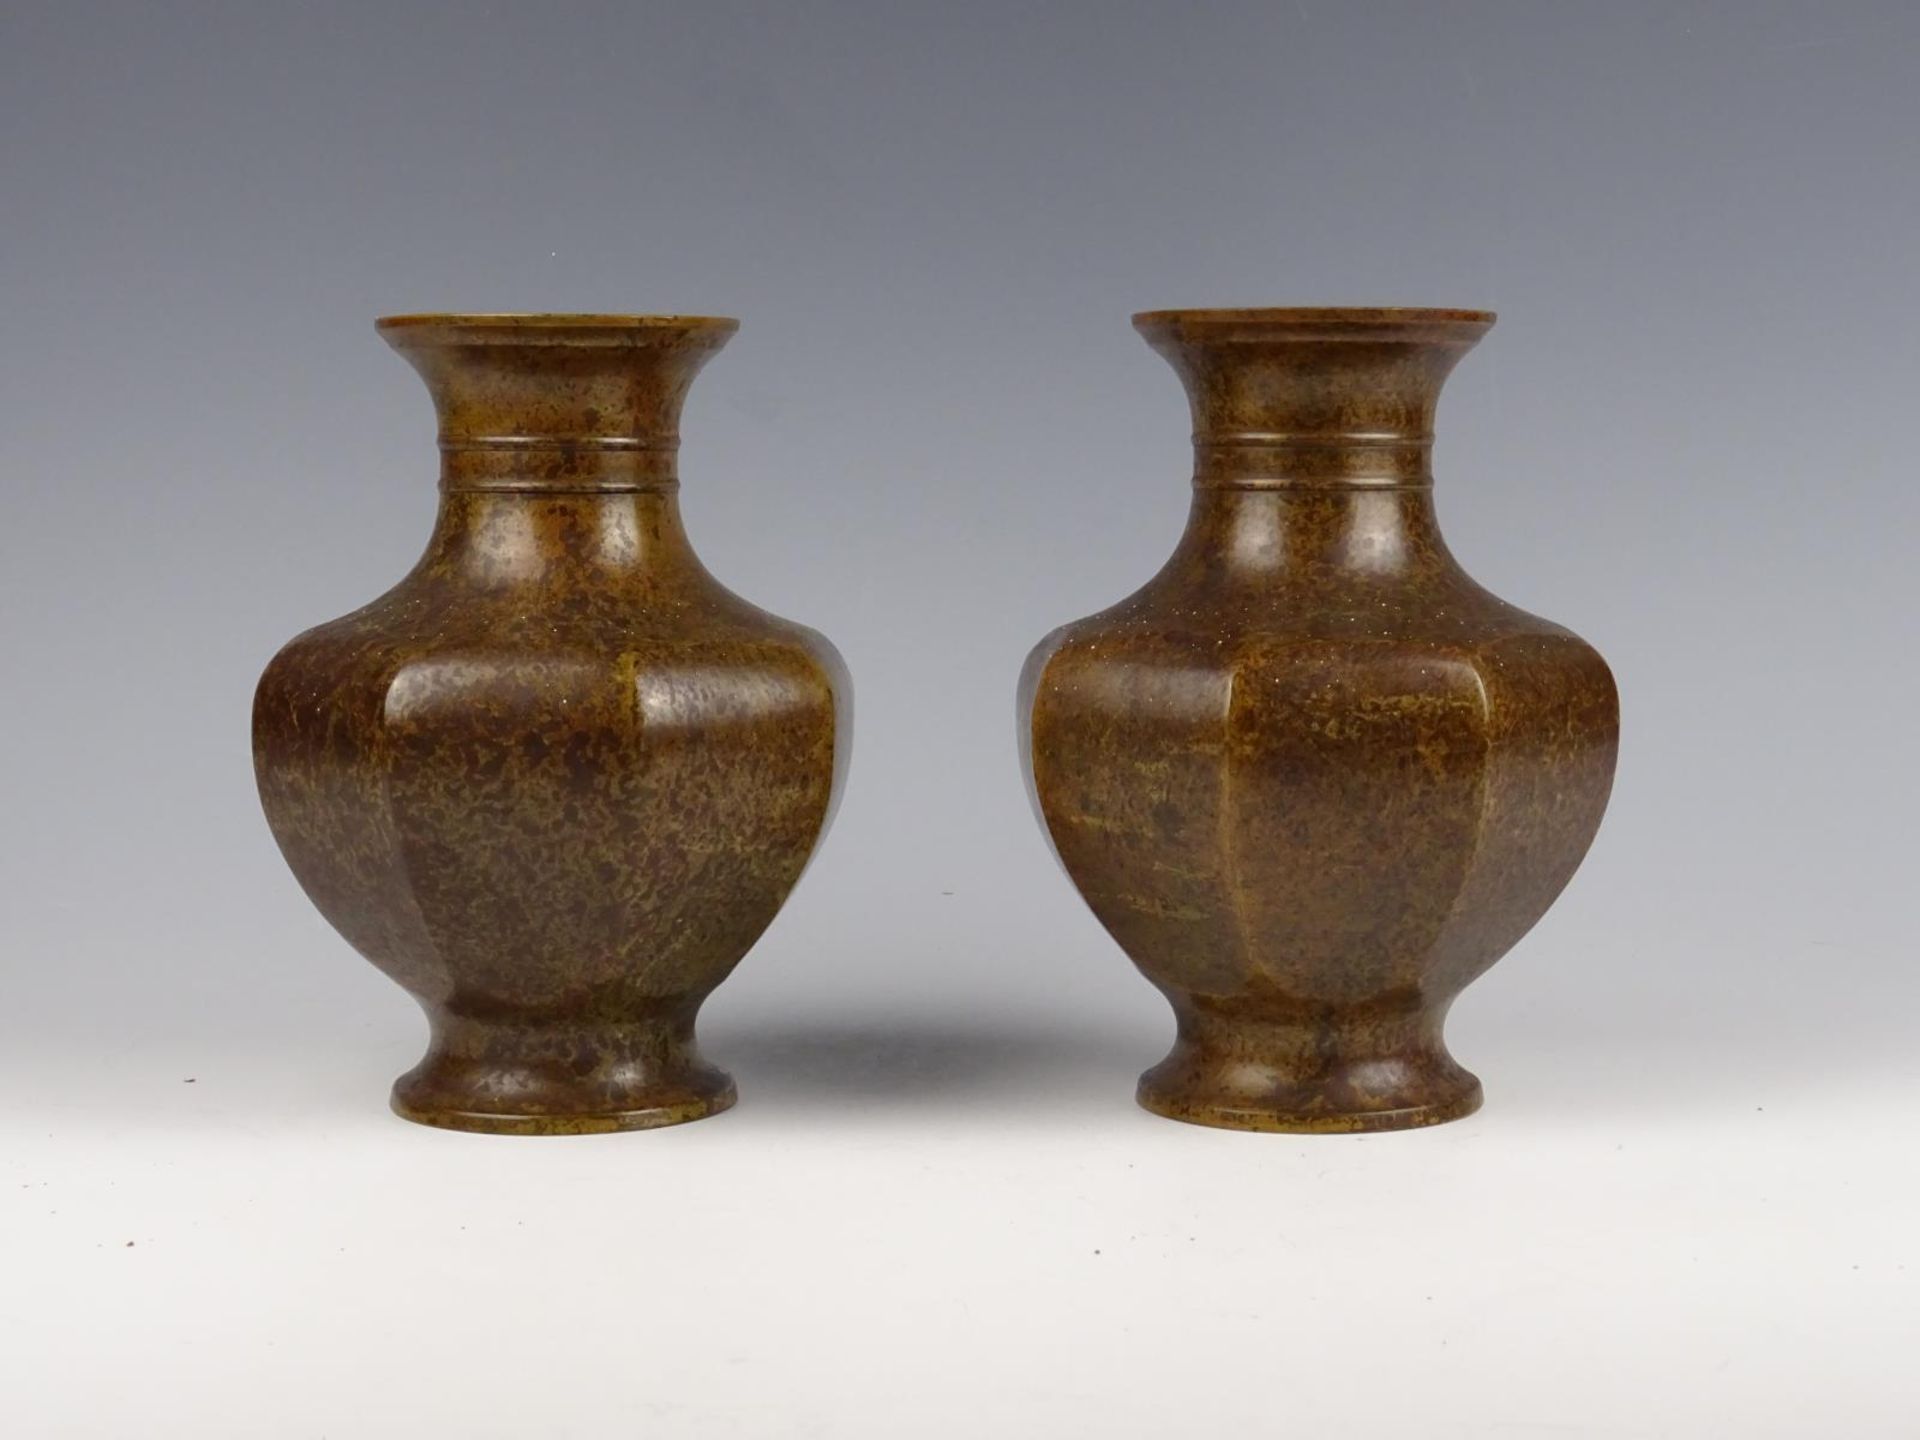 Two bronze vases